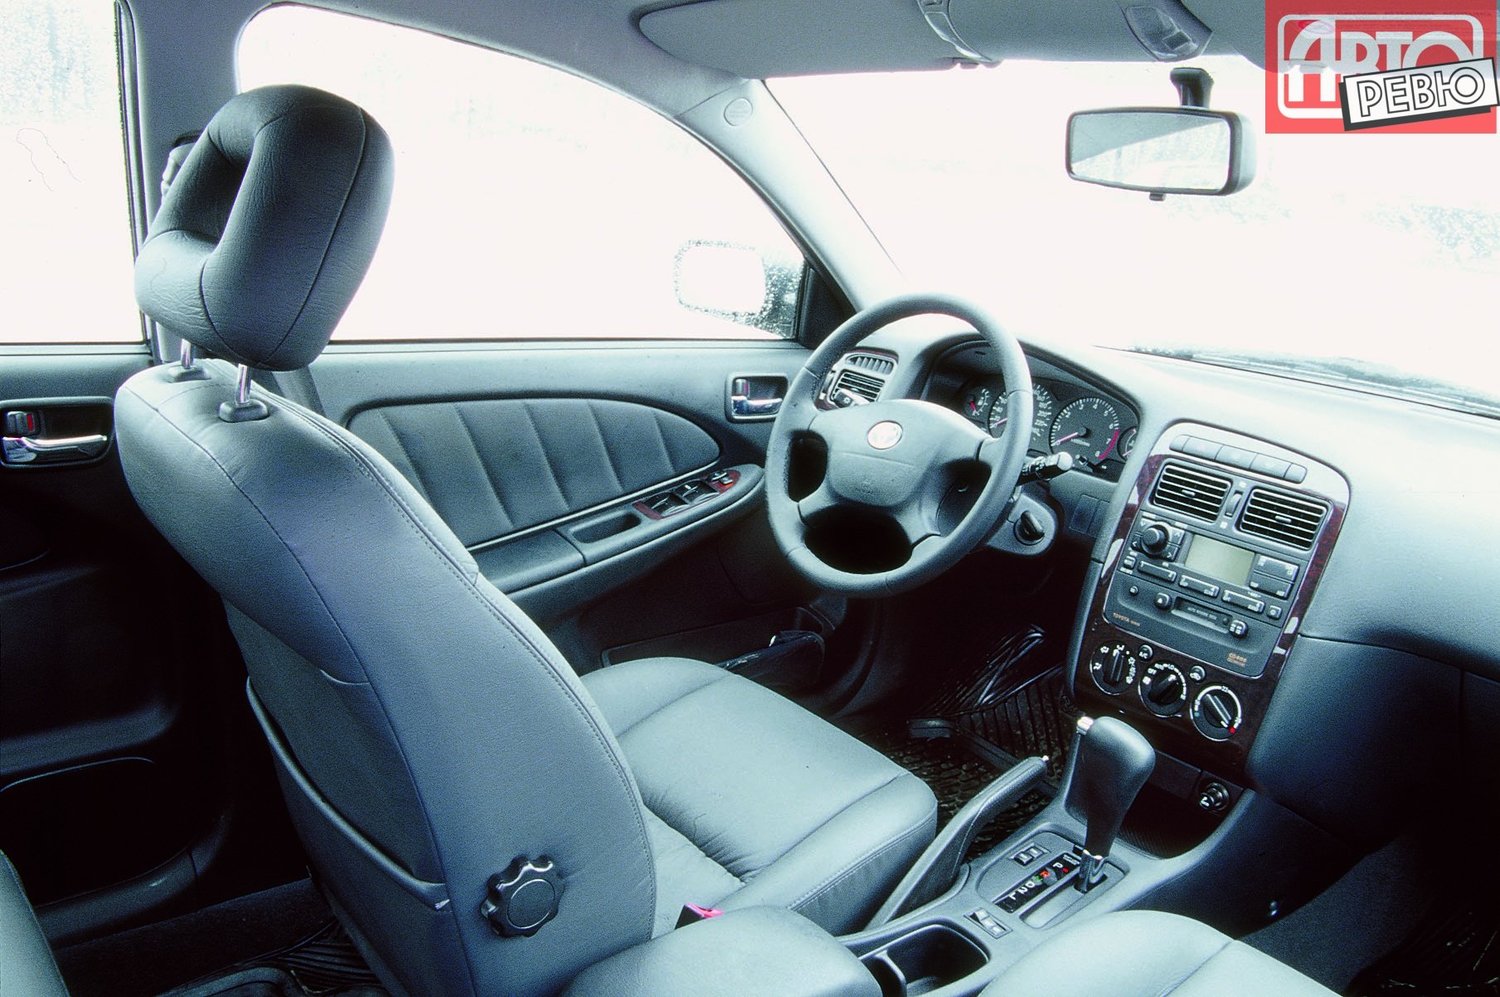 хэтчбек 5 дв. Toyota Avensis 2000 - 2003г выпуска модификация 1.6 MT (110 л.с.)